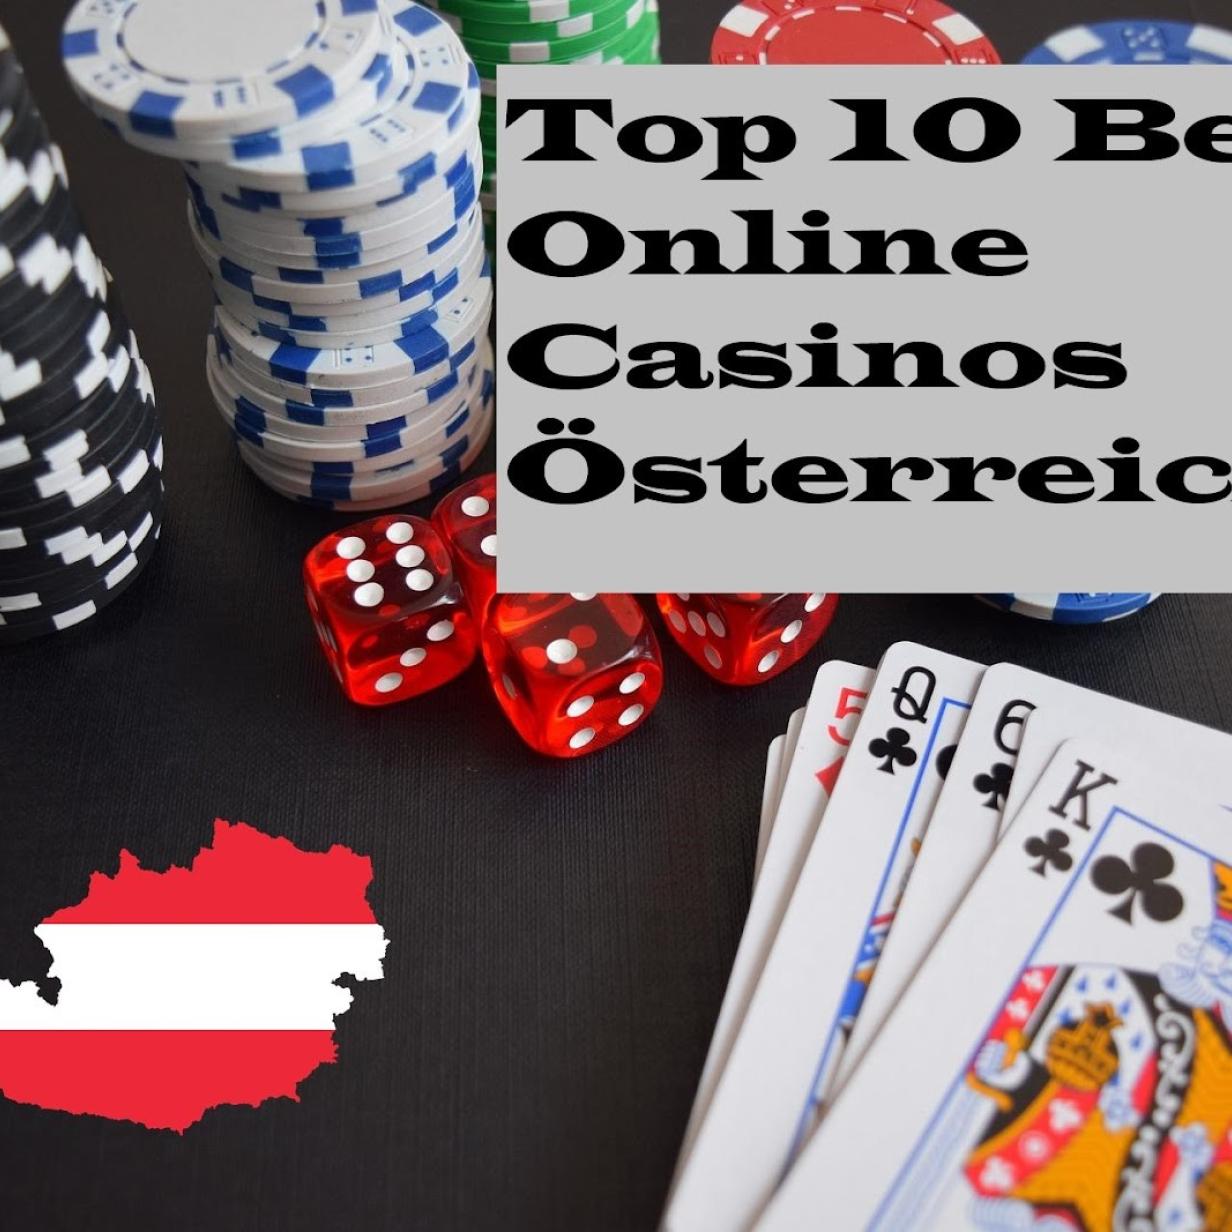 Online Casino Austria auf meinbezirtk.at Shortcuts - Der einfache Weg